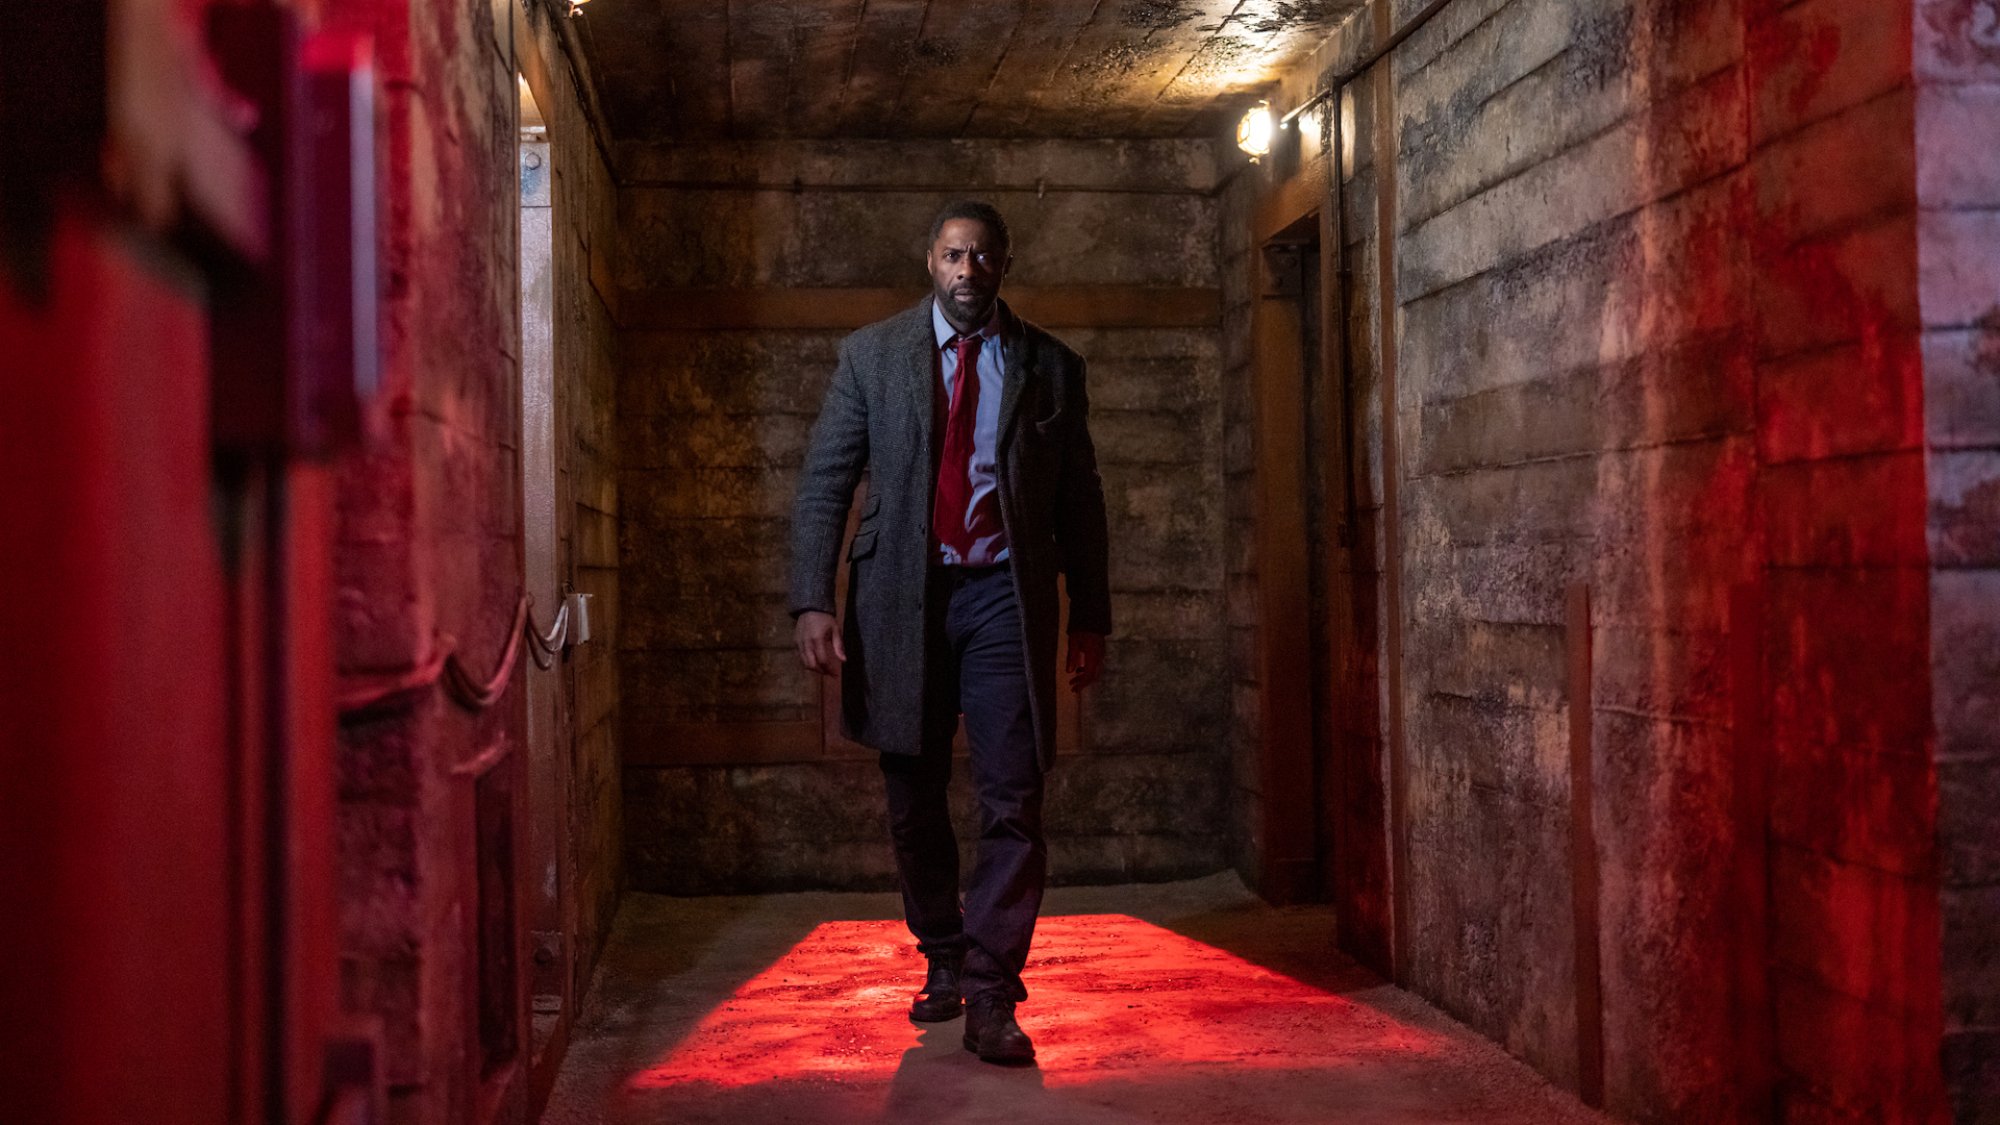 Un homme en costume et trench-coat marche à grands pas dans un couloir industriel éclairé en rouge.